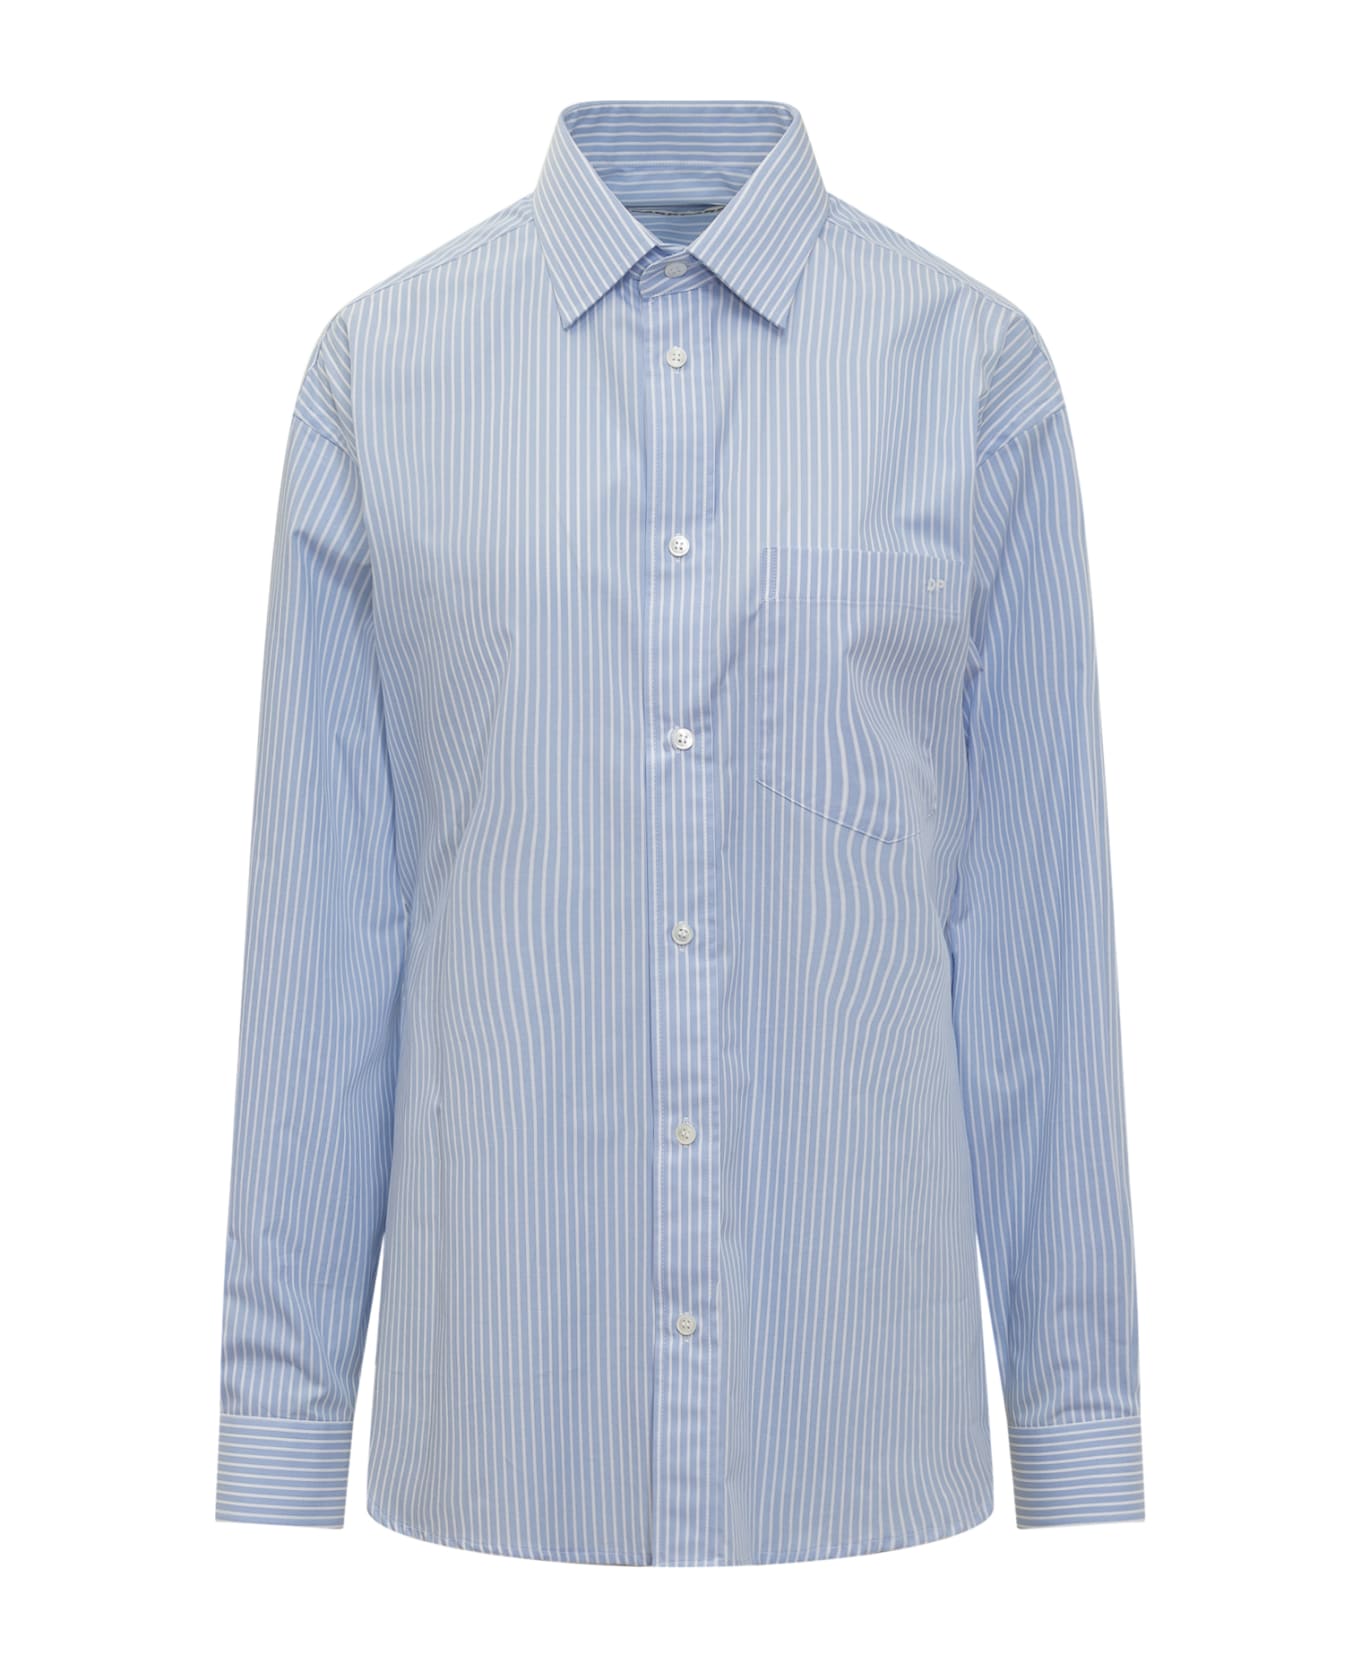 DARKPARK Anne Tailored Shirt - BLUE/WHITE